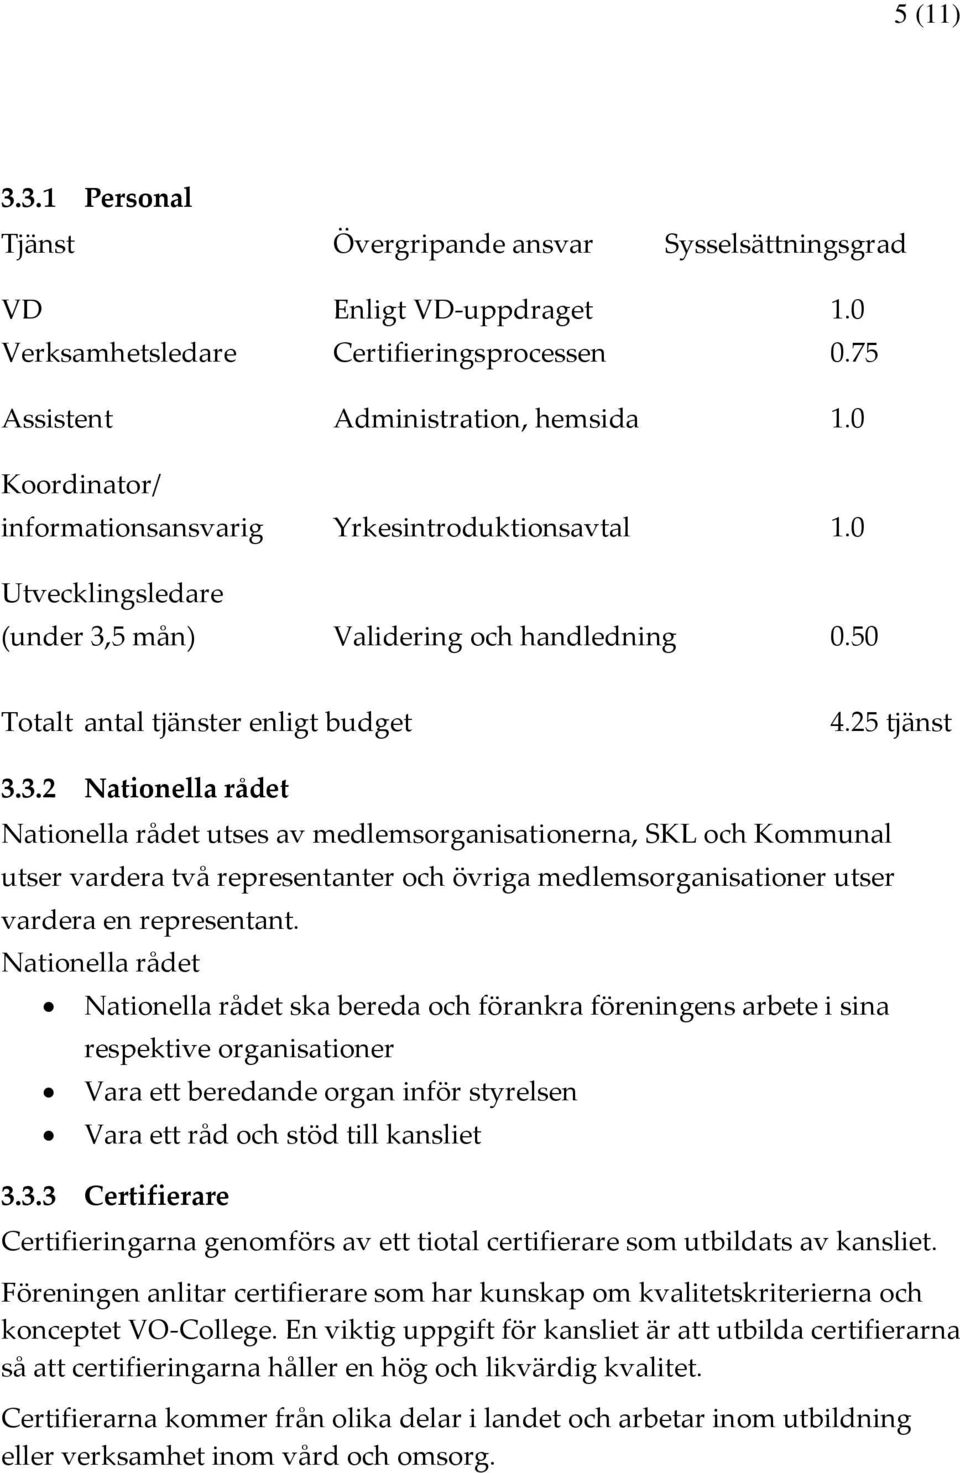 5 mån) Validering och handledning 0.50 Totalt antal tjänster enligt budget 4.25 tjänst 3.